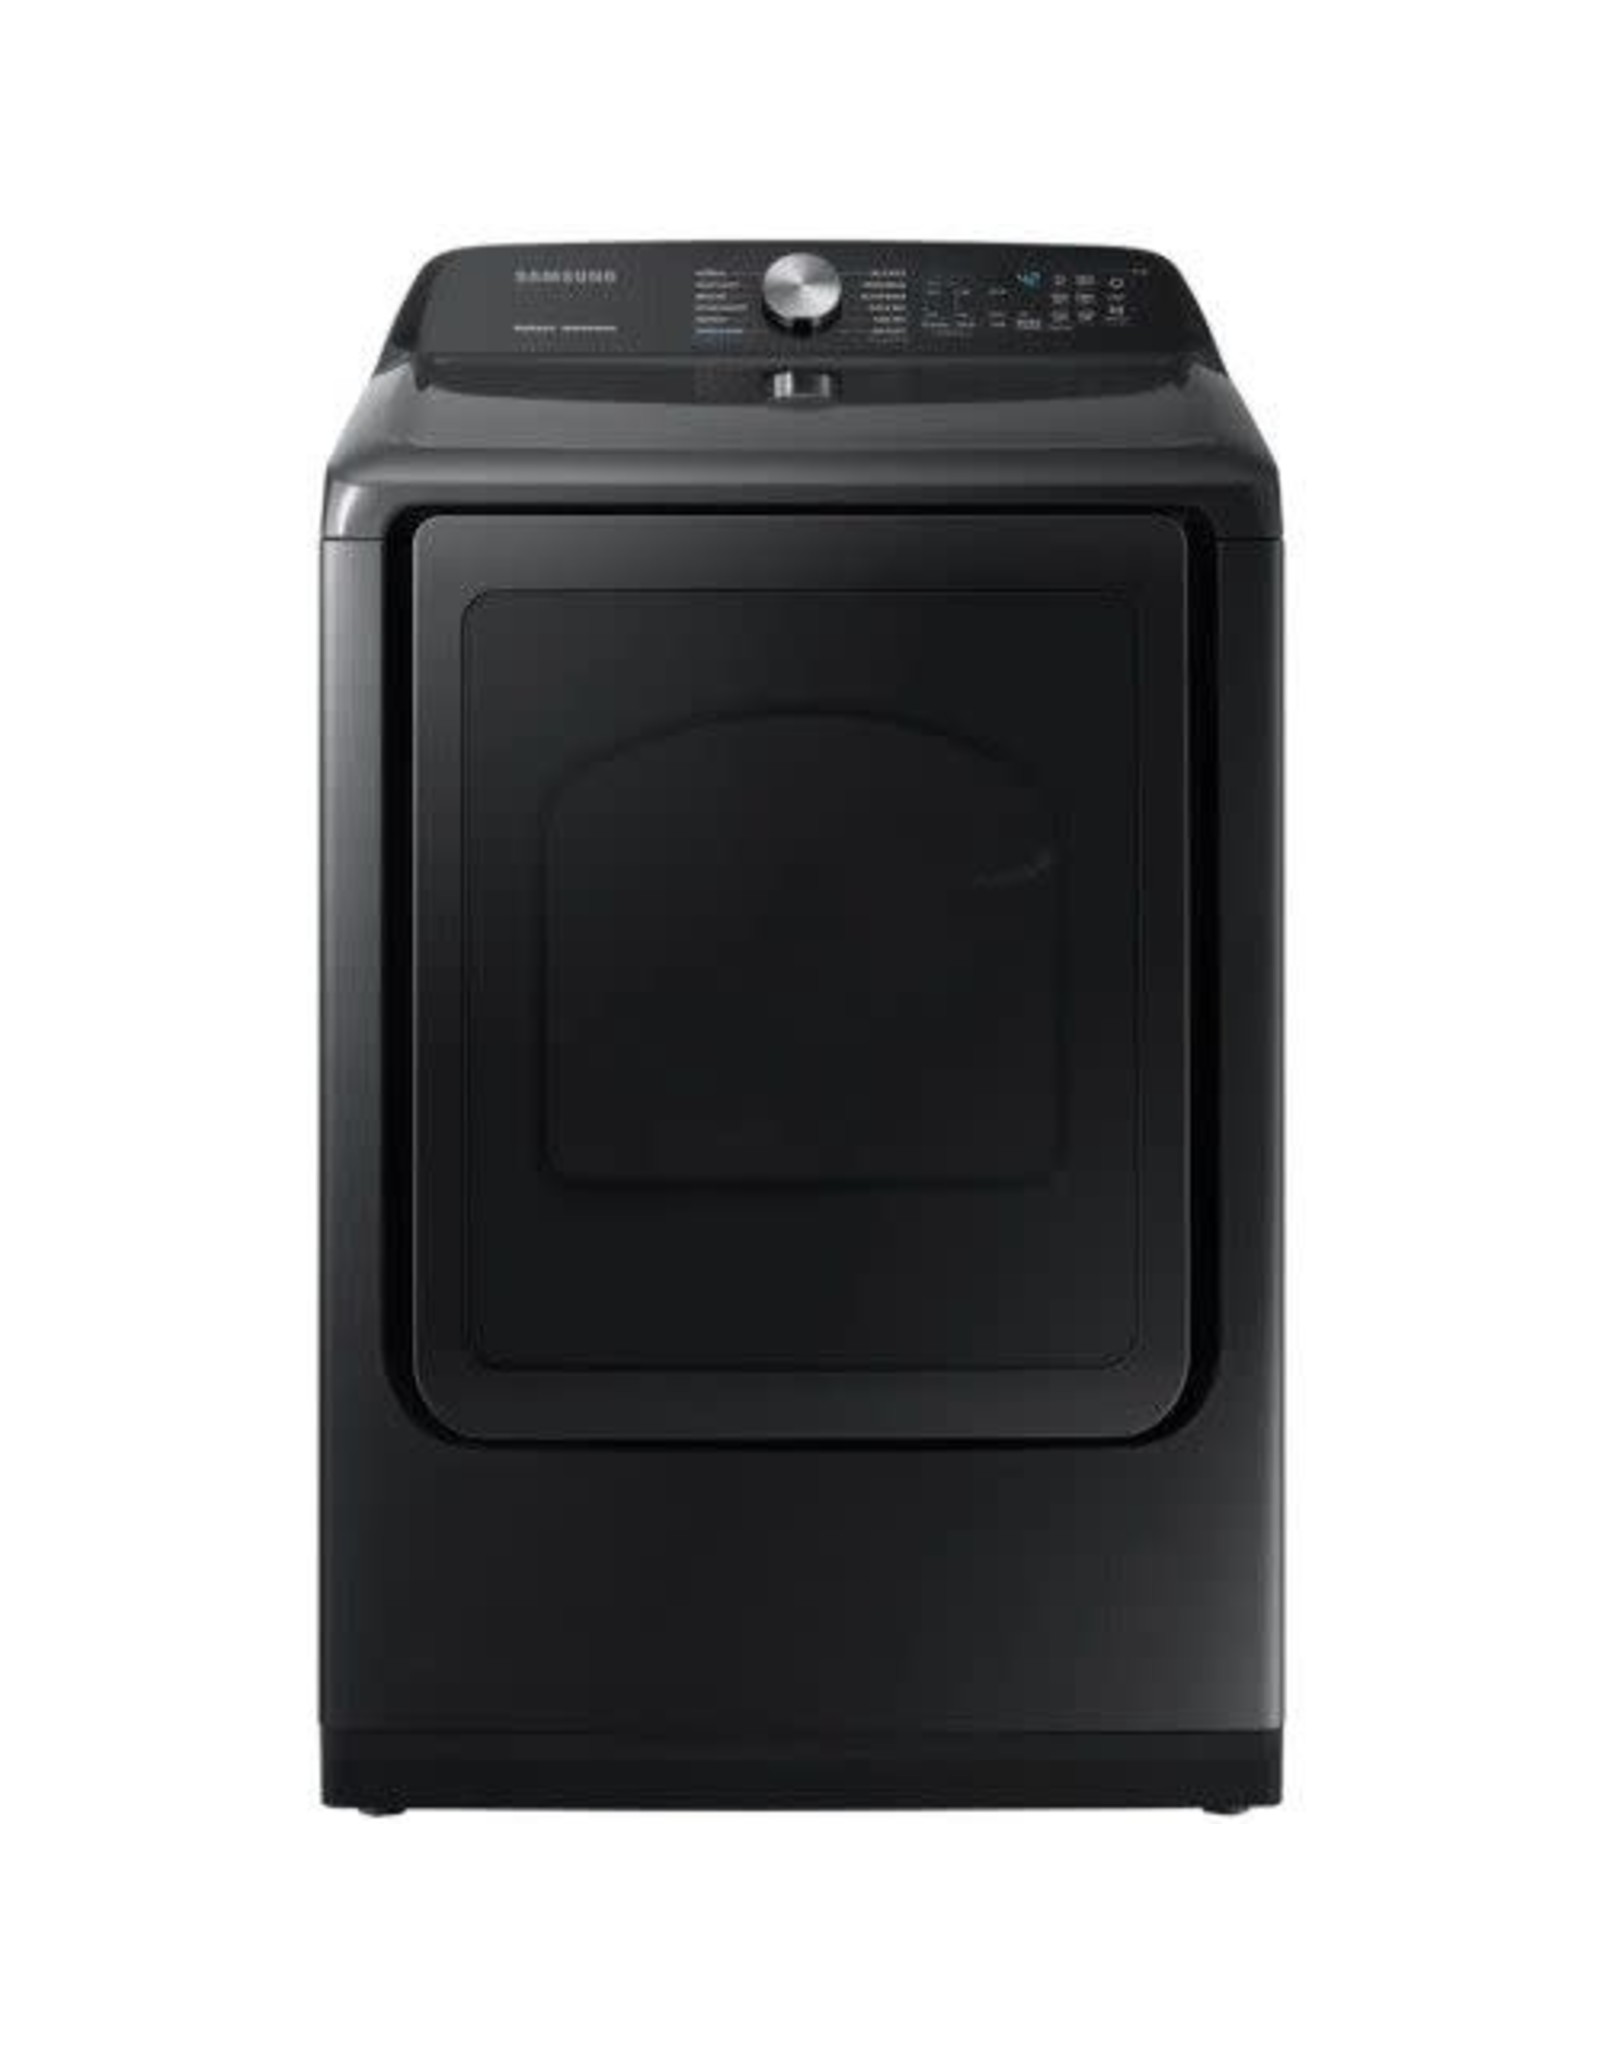 SAMSUNG USED DVE50R5400V Samsung 7.4 cu. ft. Fingerprint Resistant Black Stainless Electric Dryer with Steam Sanitize+